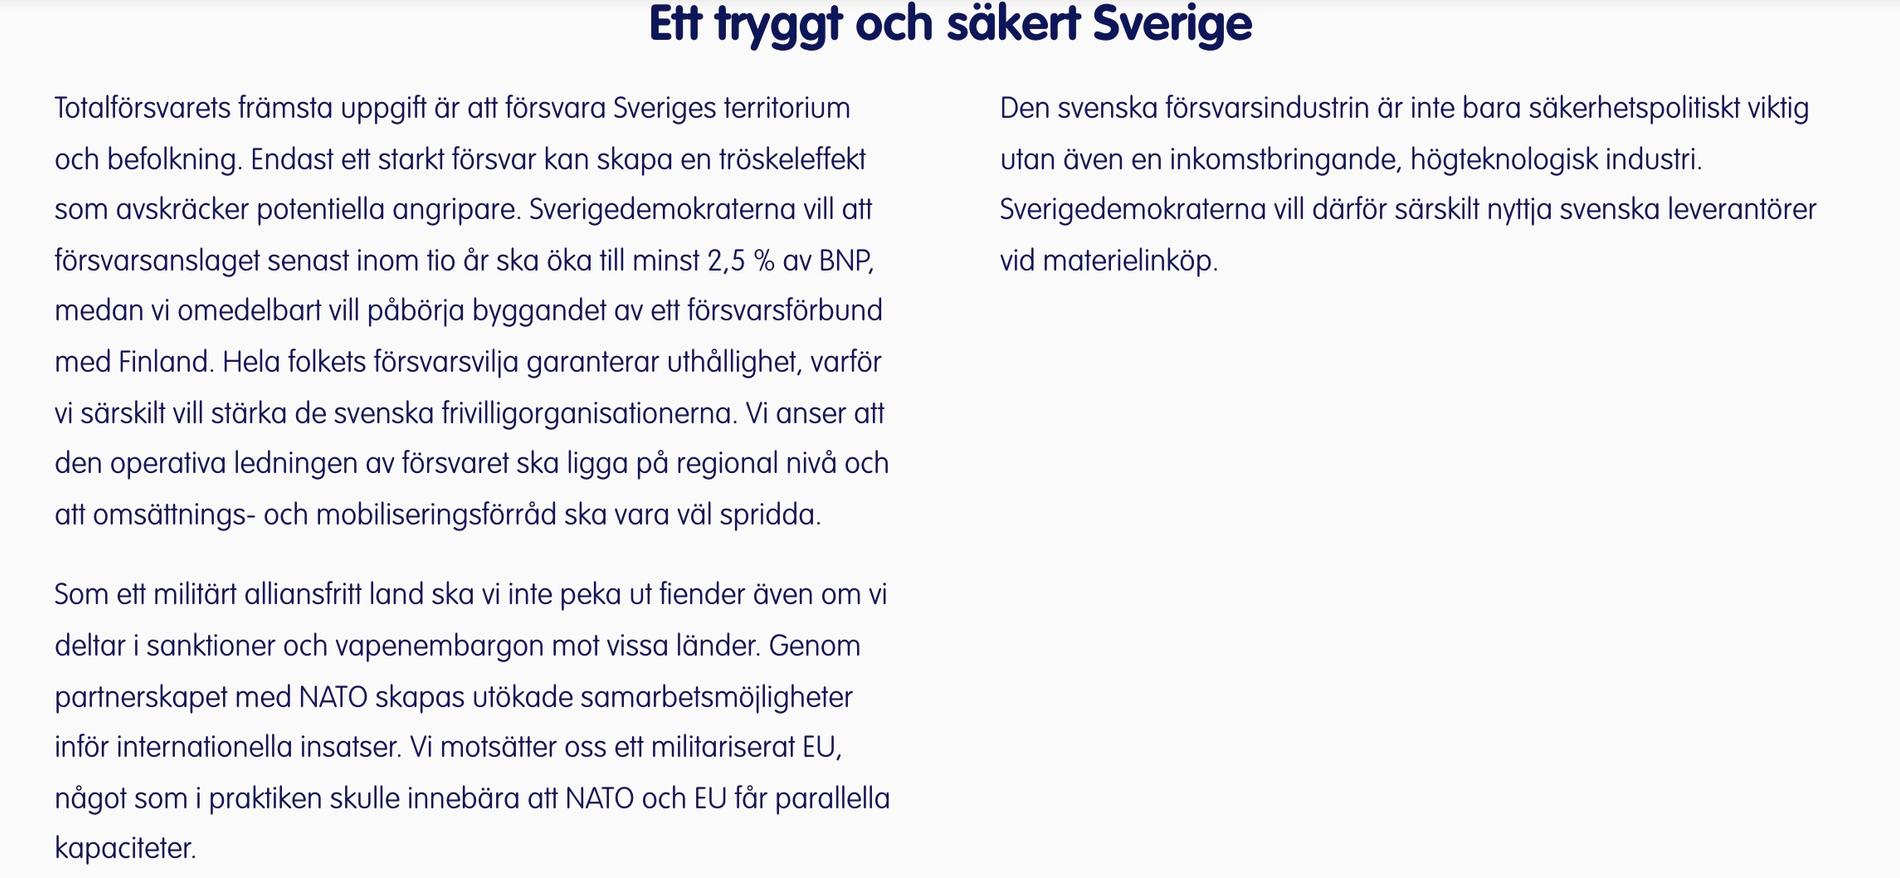 Sverigedemokraternas försvarspolitik utan formuleringen.